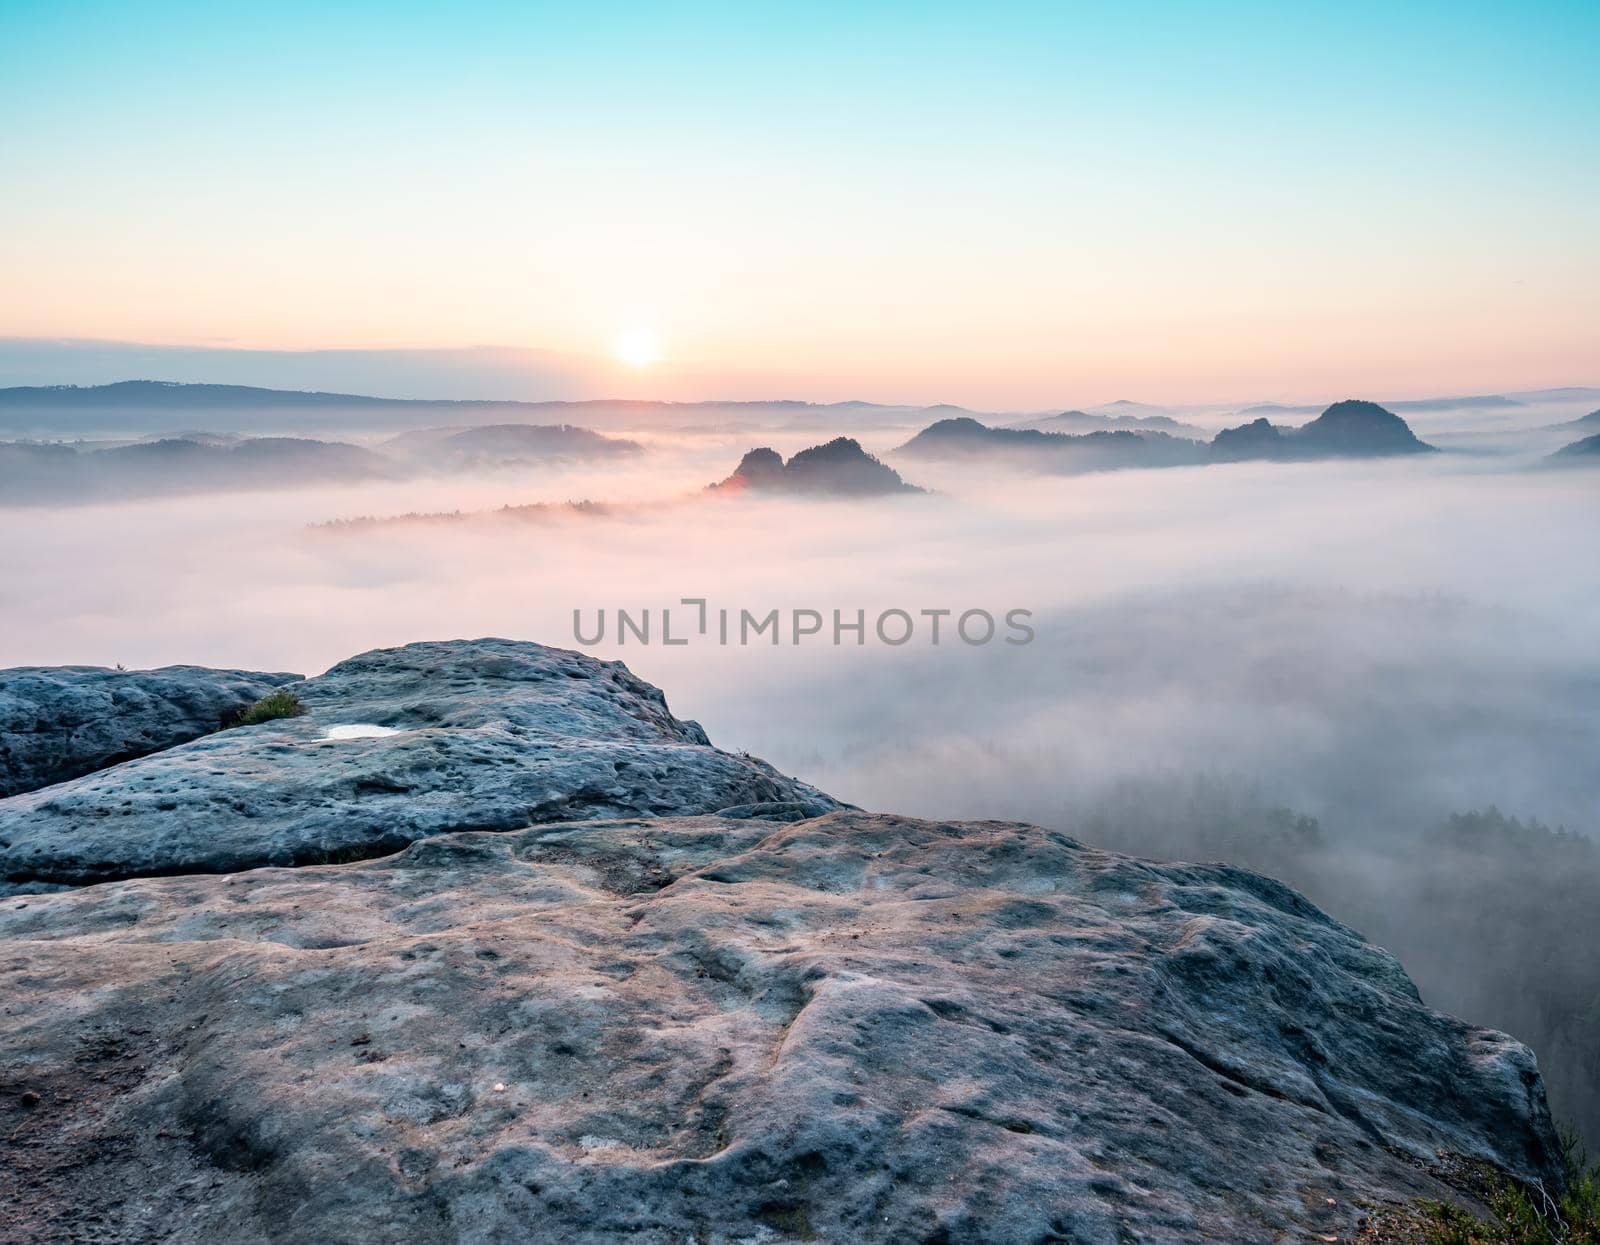 Mountain top rock, sleepy misty landscape bellow under heavy morning  fog